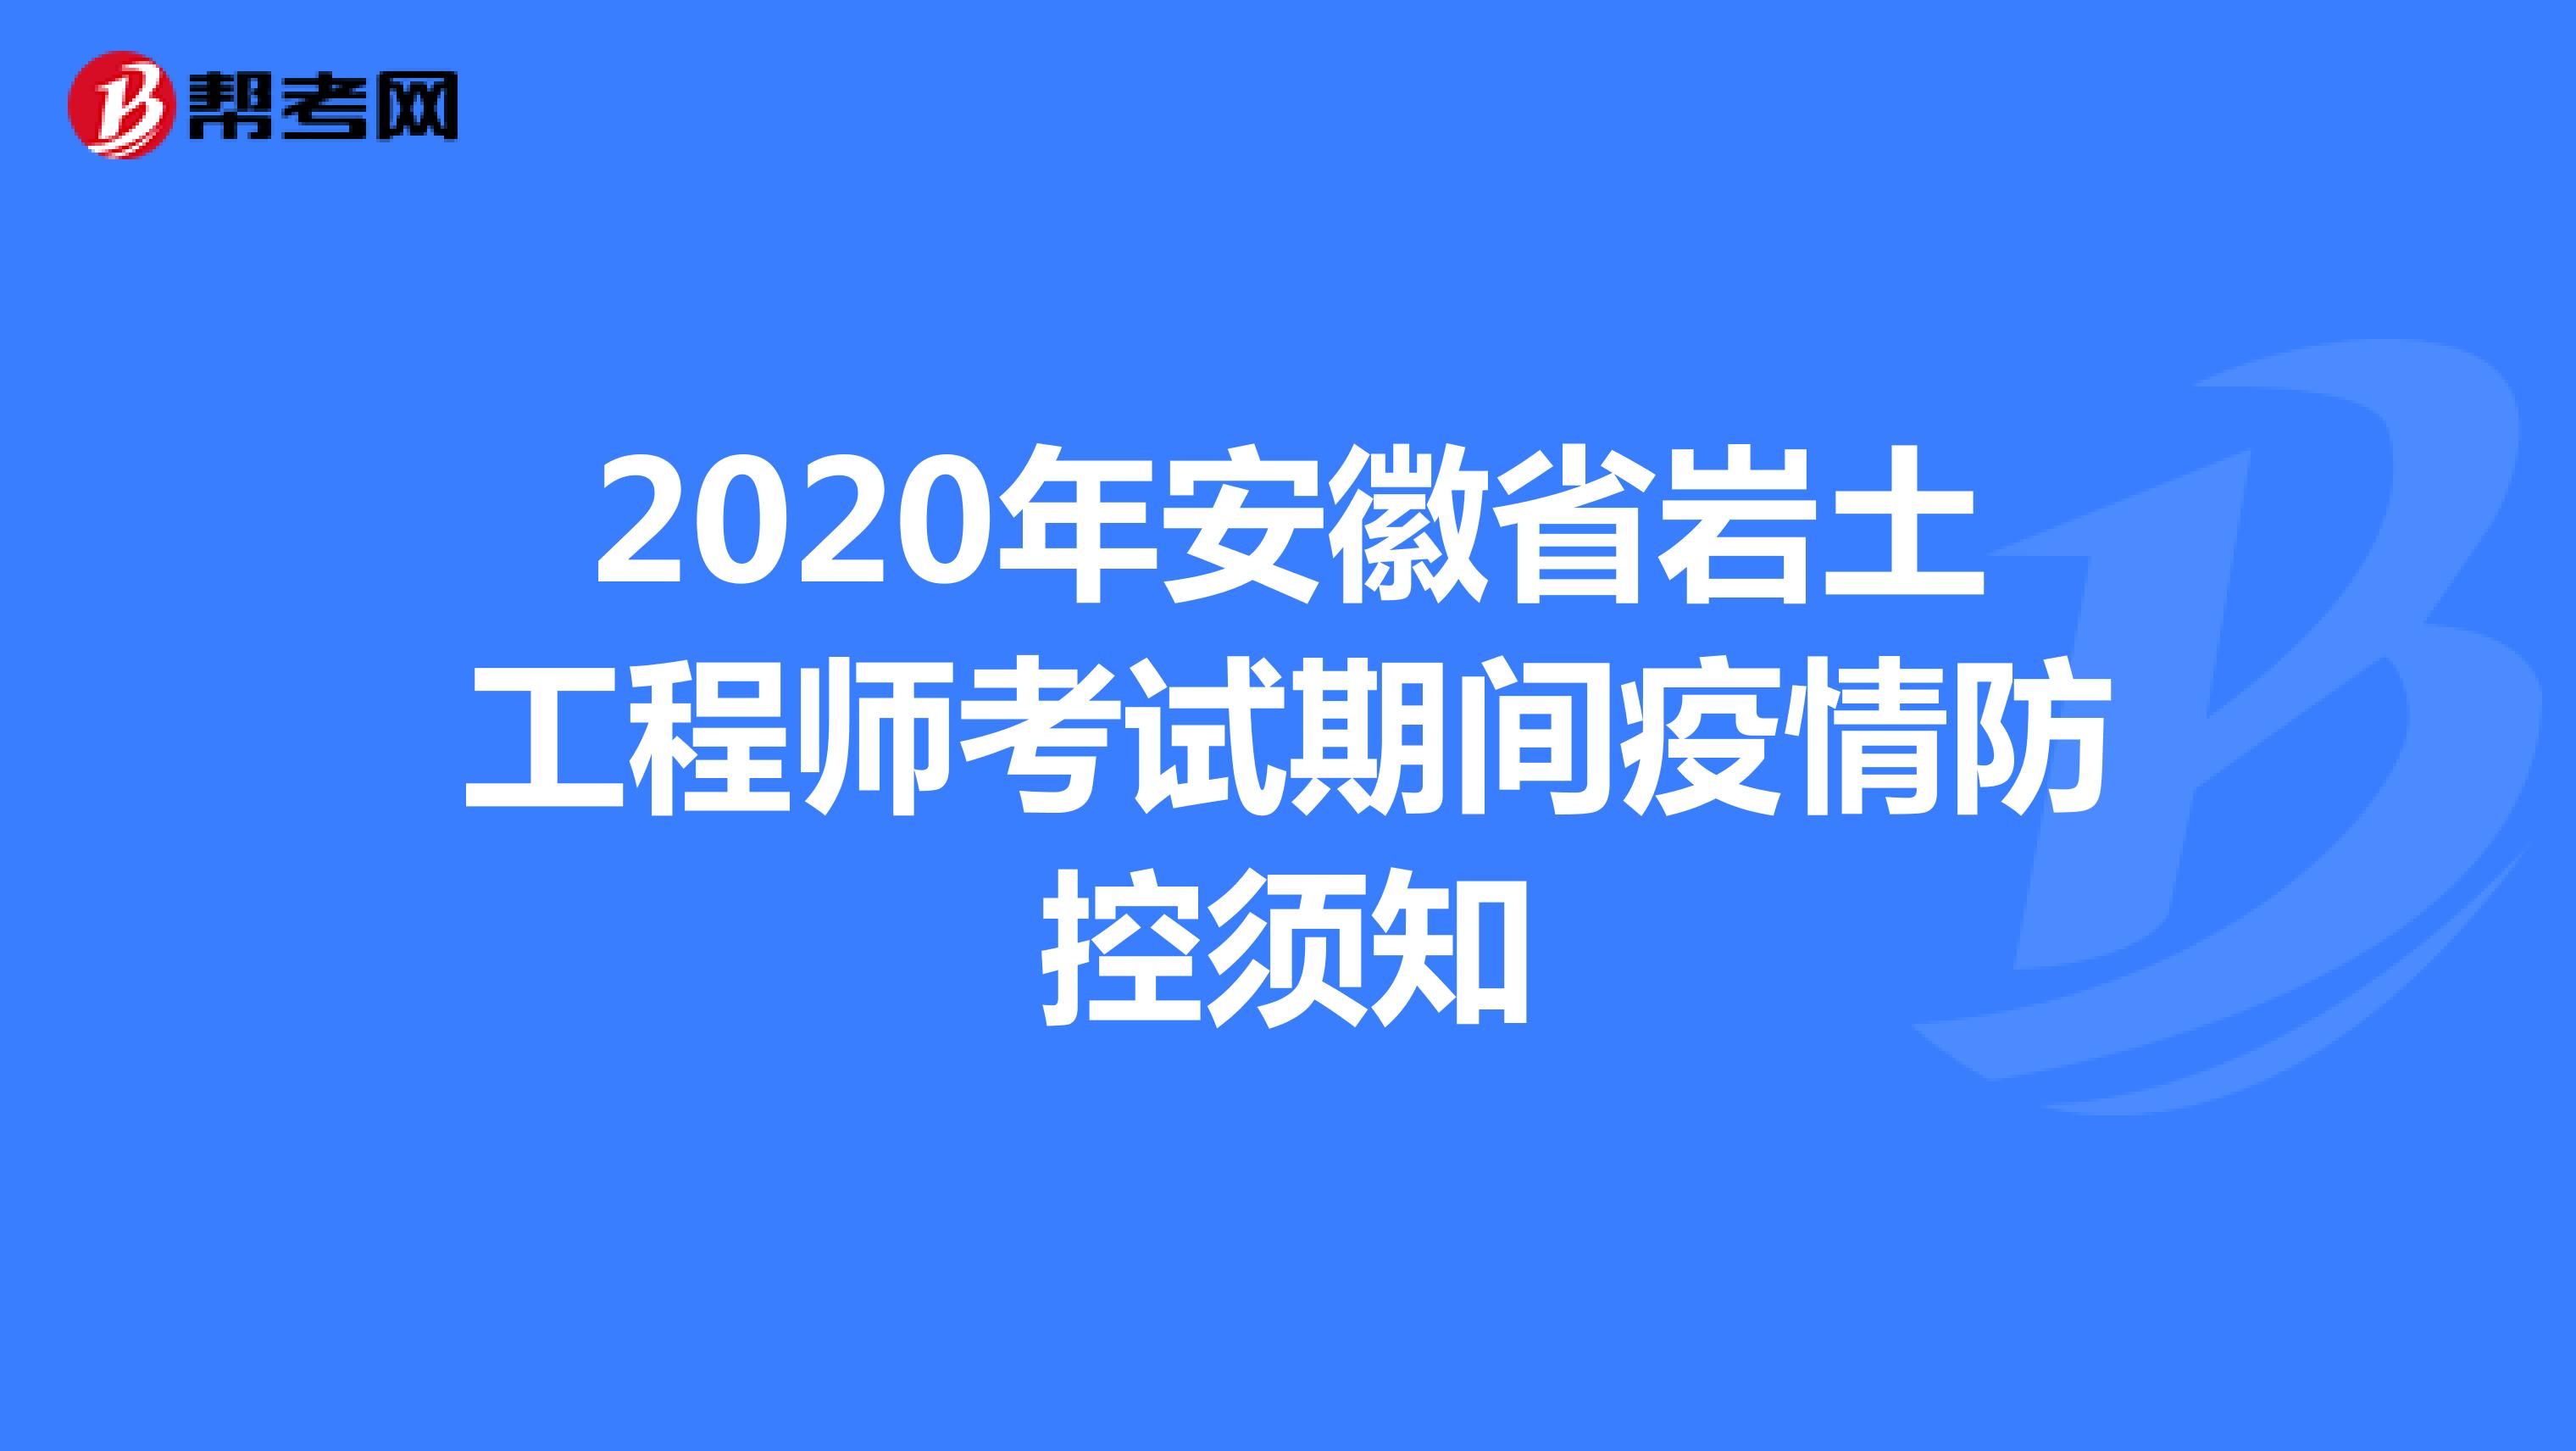 2020年安徽省岩土工程师考试期间疫情防控须知